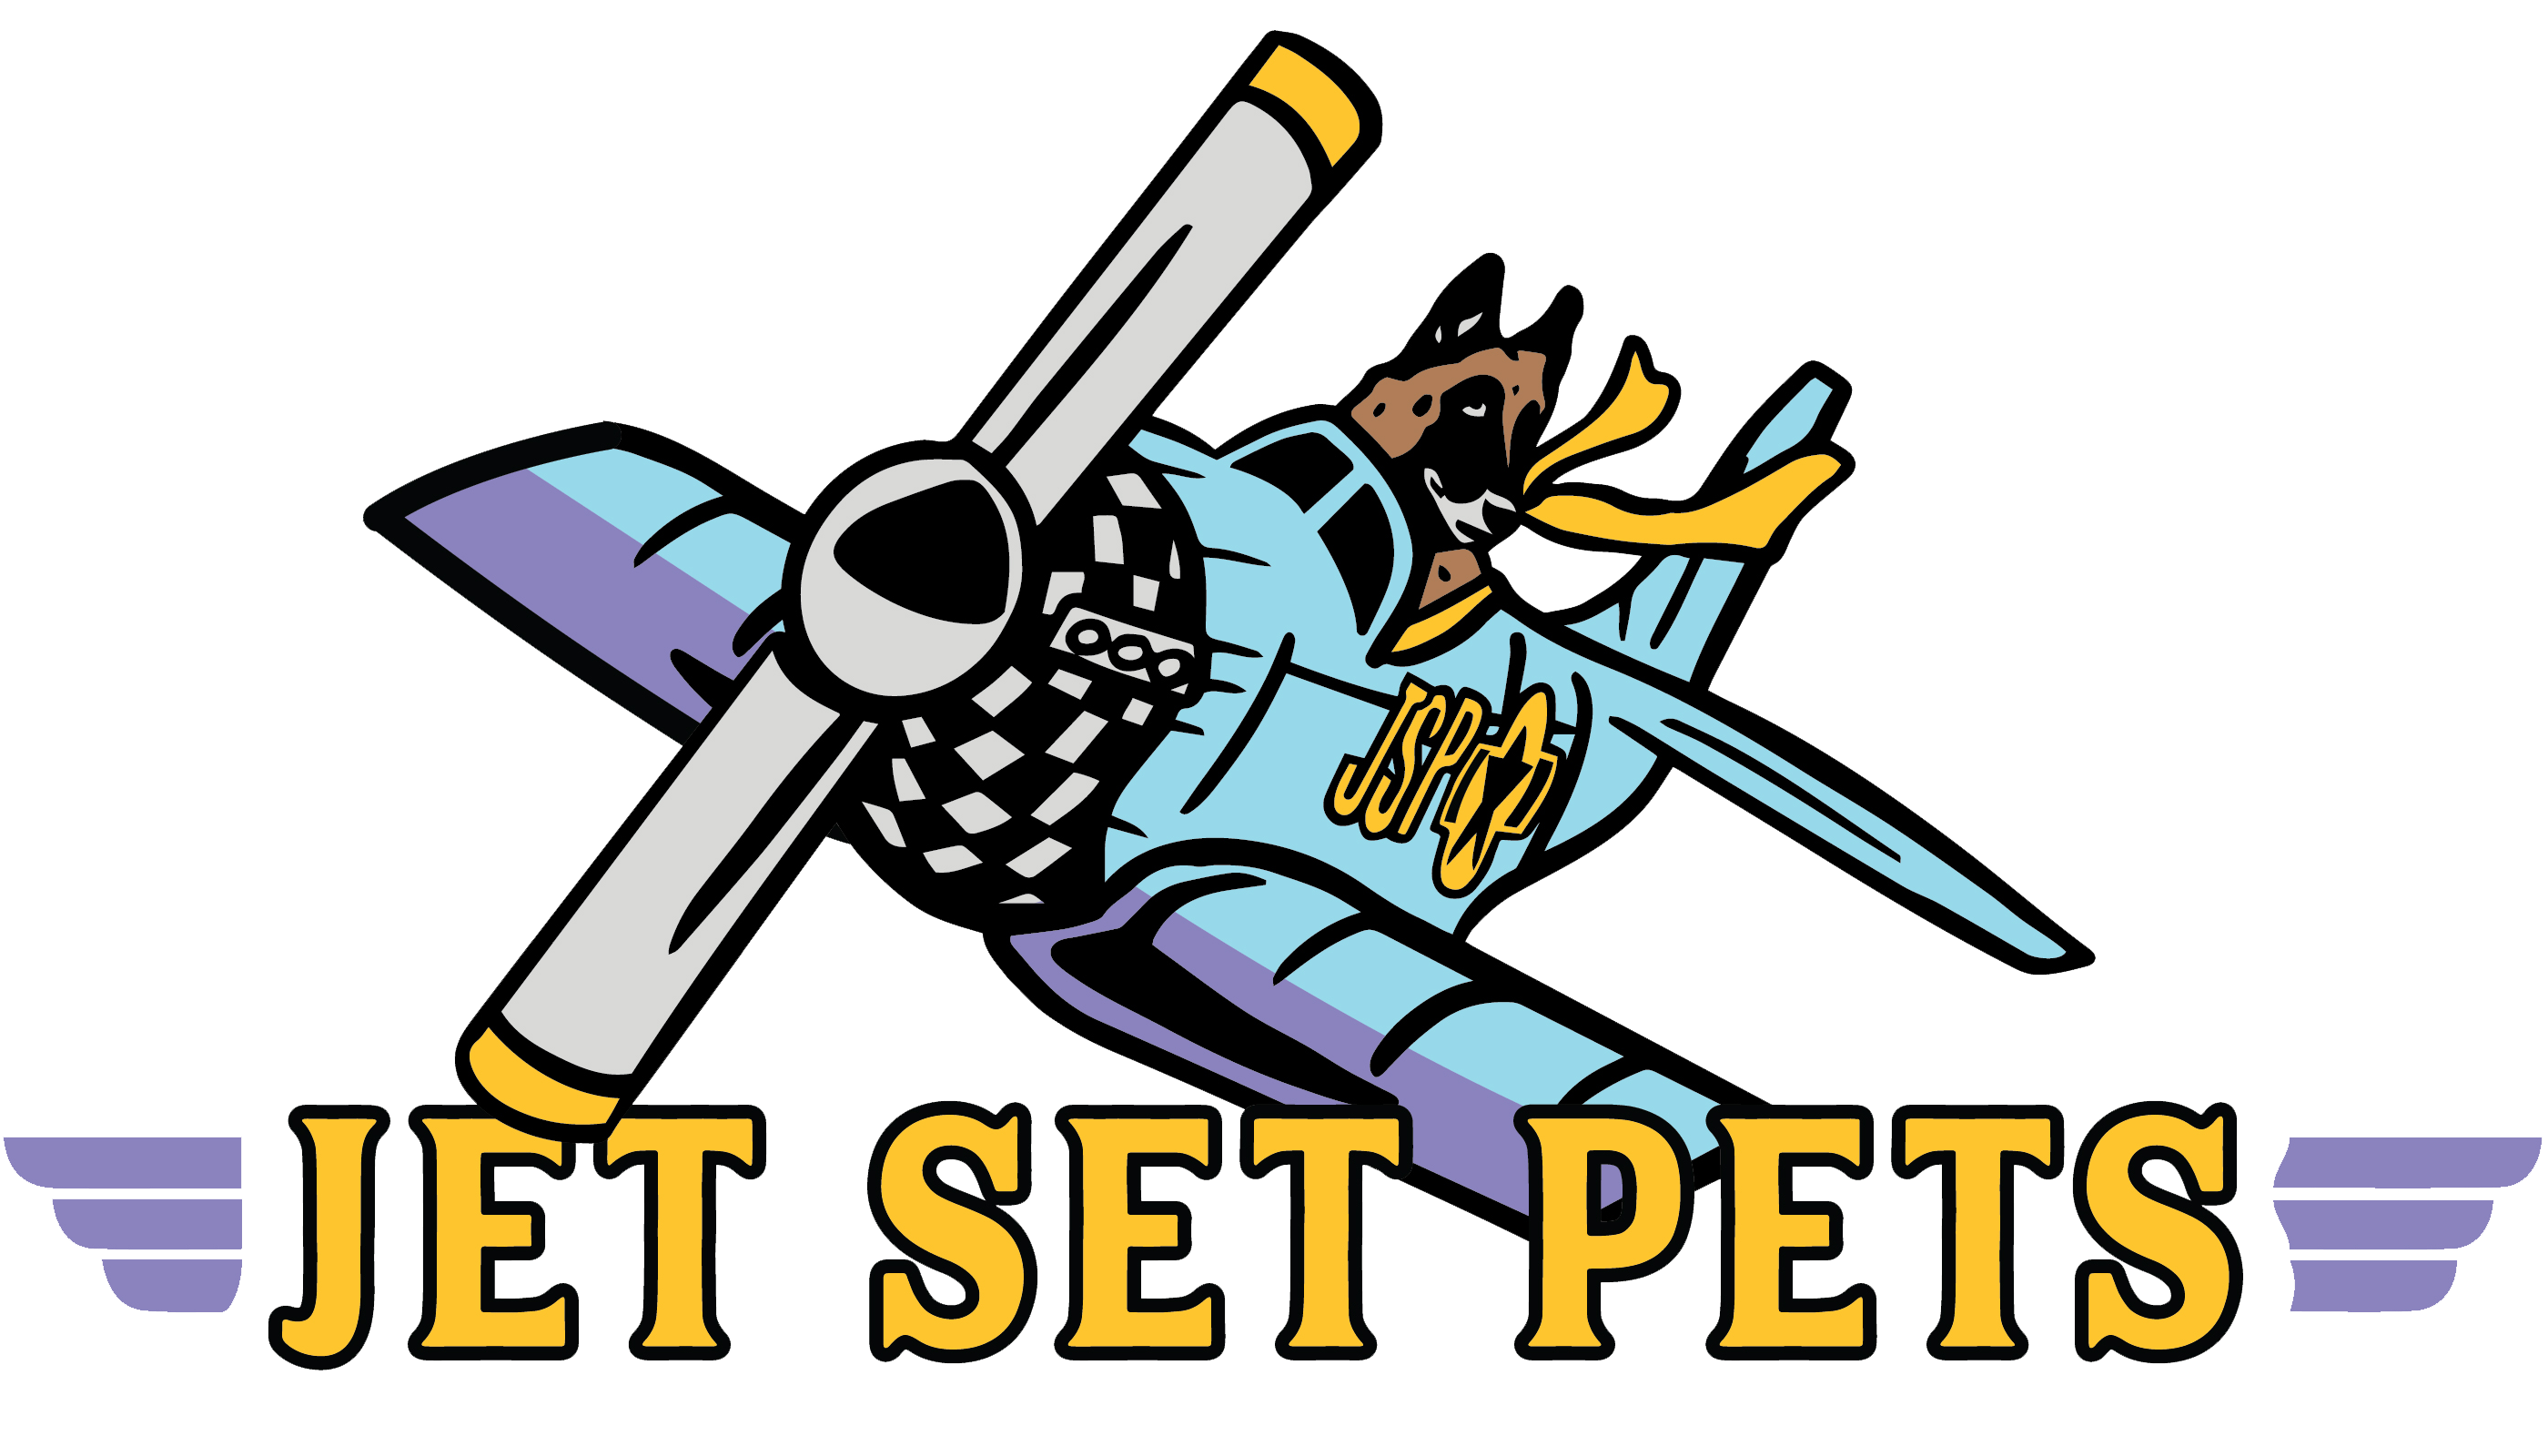 Jet Set Pets